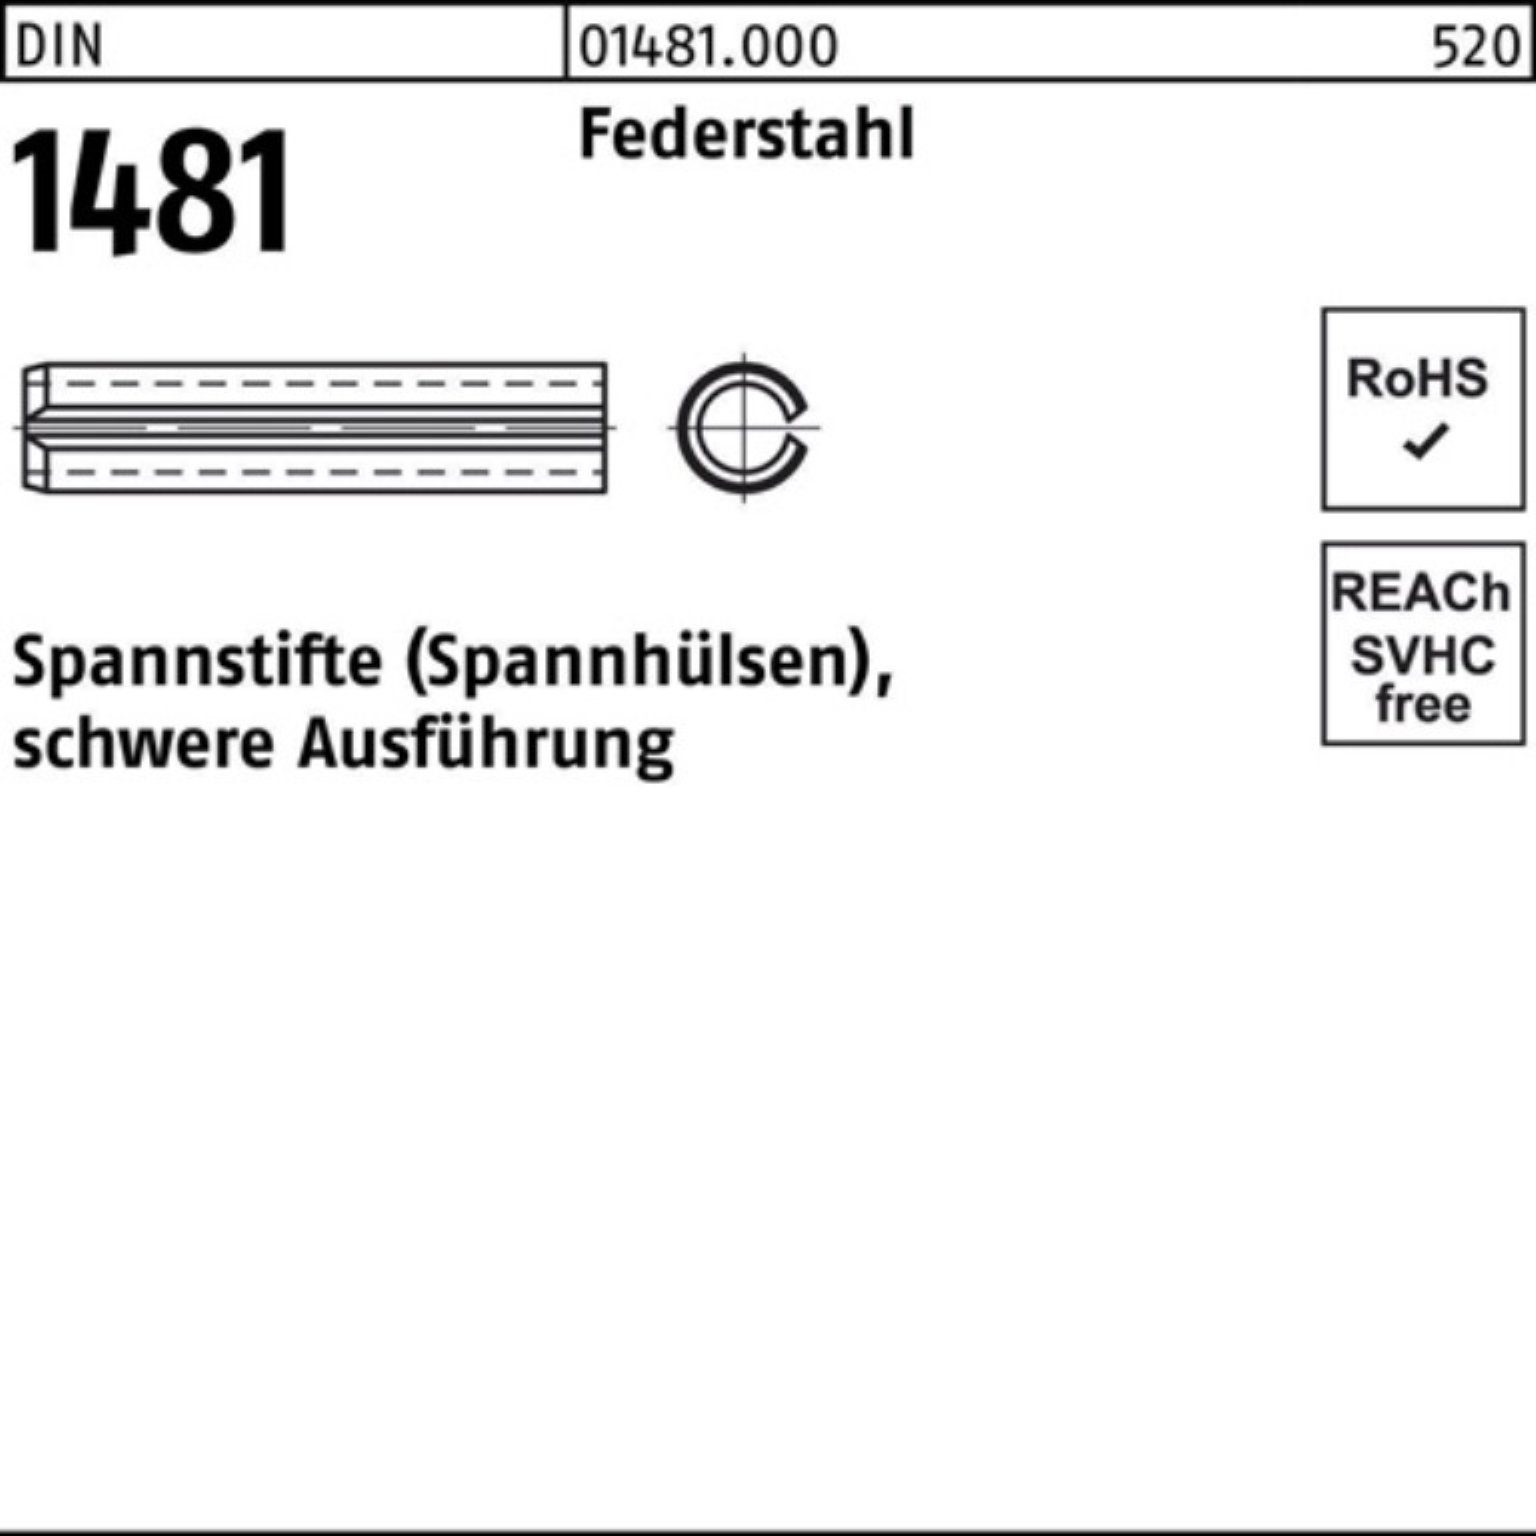 Reyher Spannstift 100er Pack Spannstift DIN 1481 10x 85 Federstahl schwere Ausführung 5